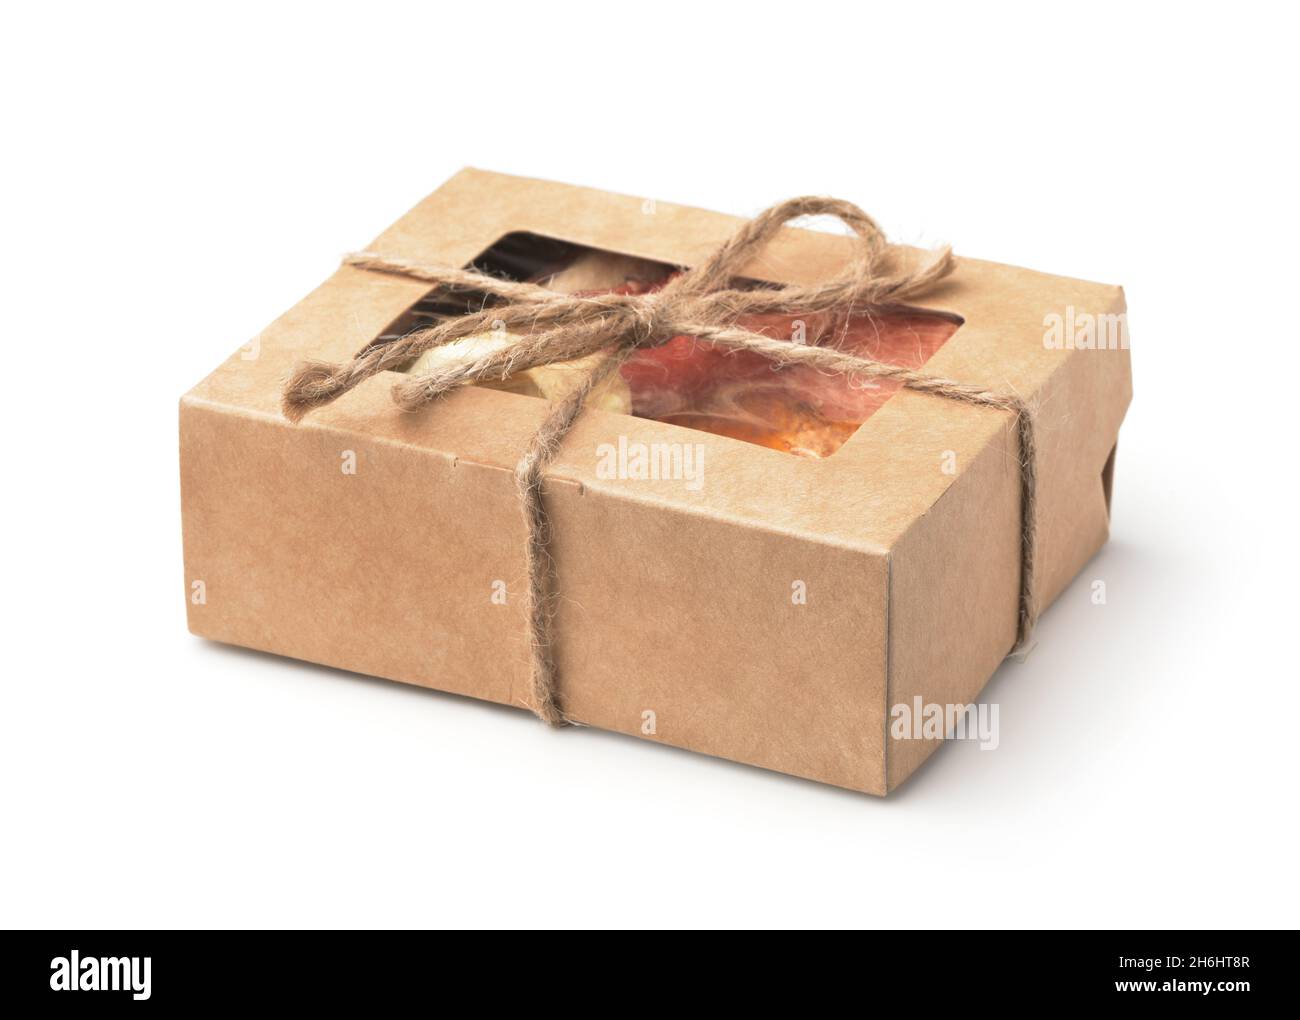 Scatola regalo di carta kraft marrone piena di dolci di frutta biologica isolato su bianco Foto Stock